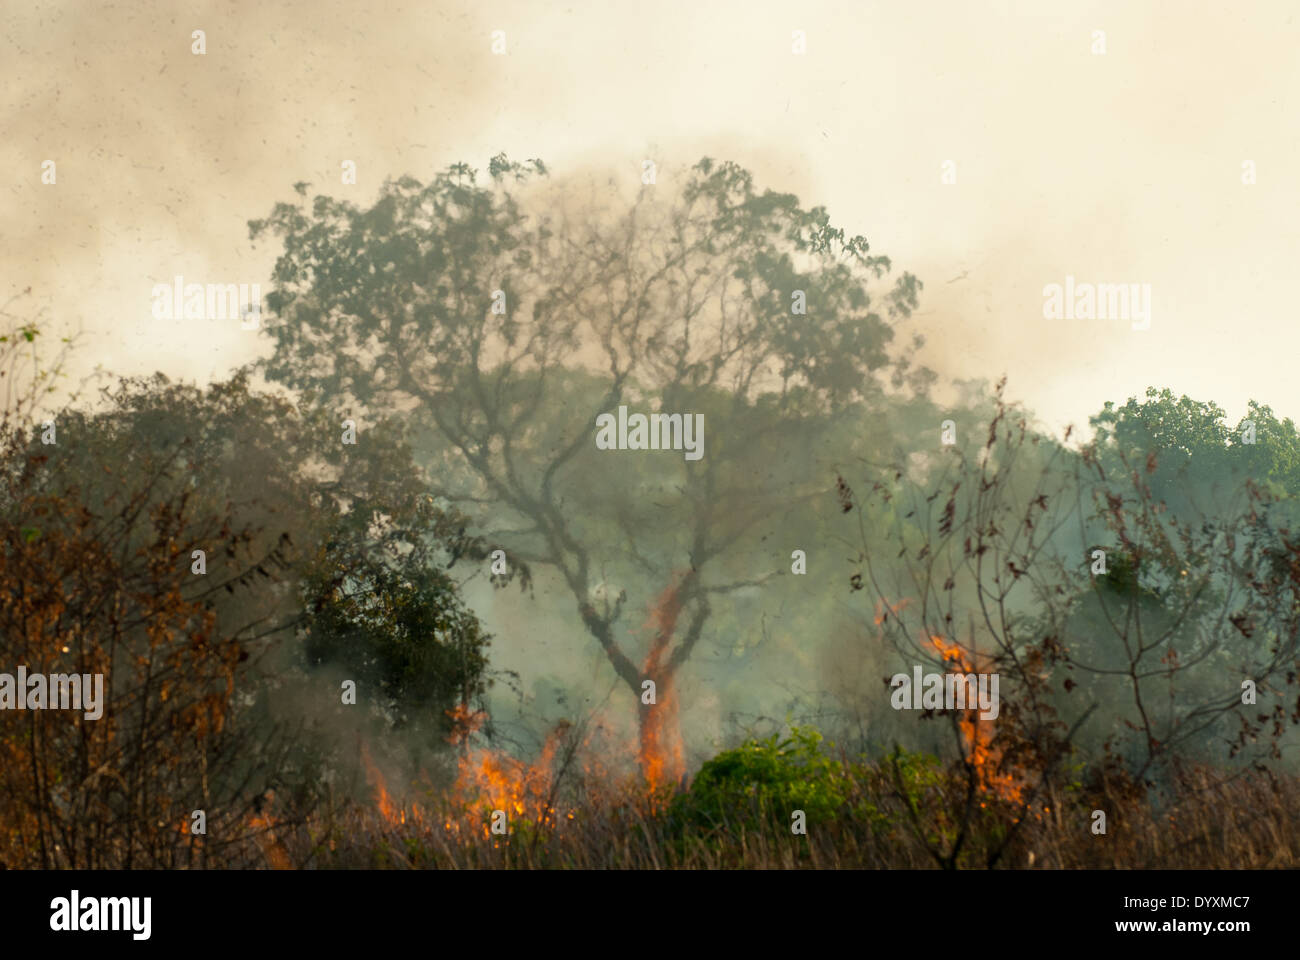 Xingu, Mato Grosso, Brasilien. Feuer brennt durch Wälder im Wald Cerrados; ein majestätischer Baum mit Flammen rundherum. Hitze-Dunst. Stockfoto